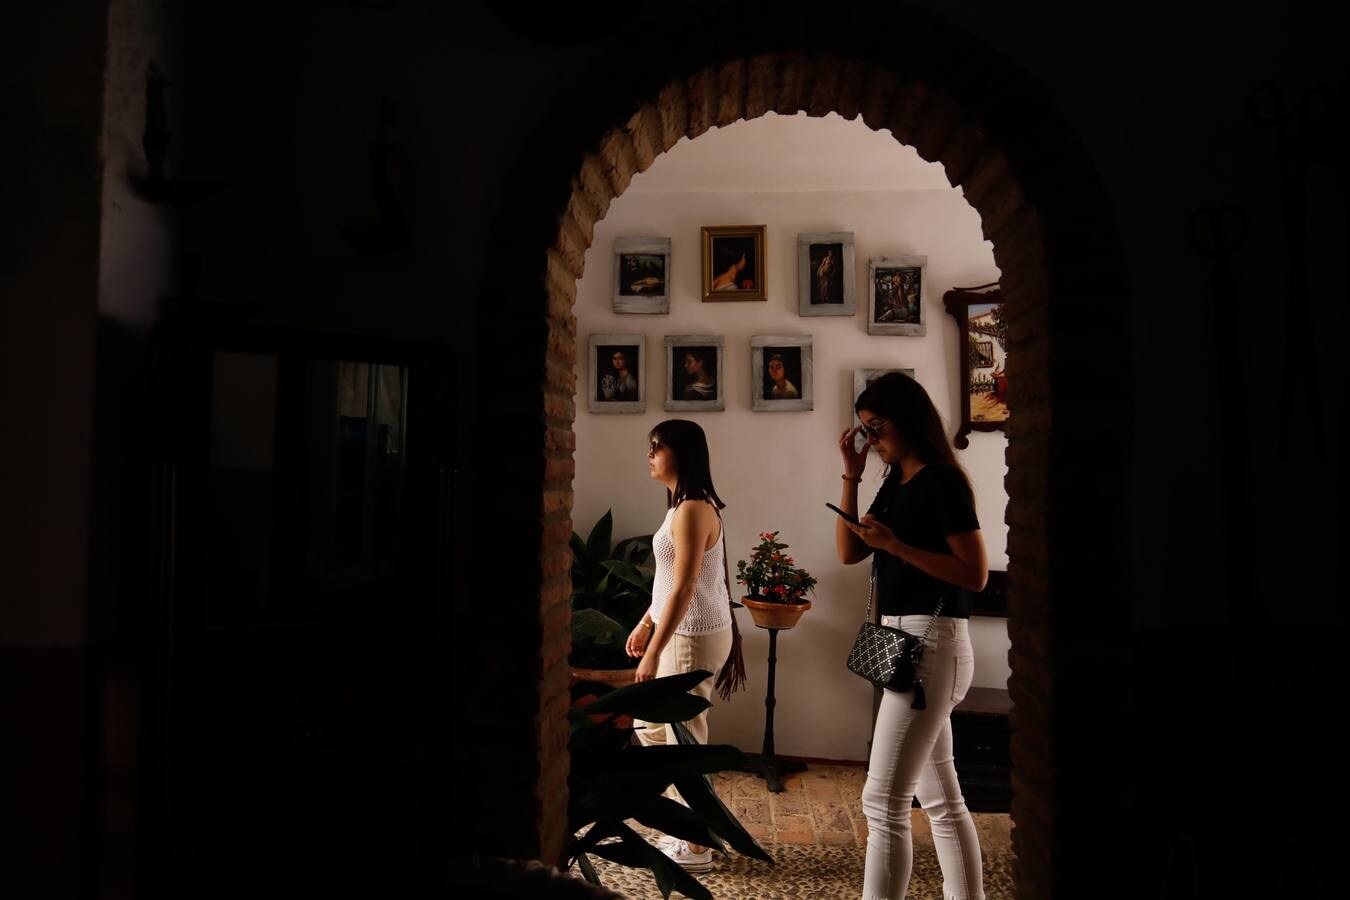 El esplendor de los patios de San Basilio-Alcázar Viejo en Córdoba, en imágenes